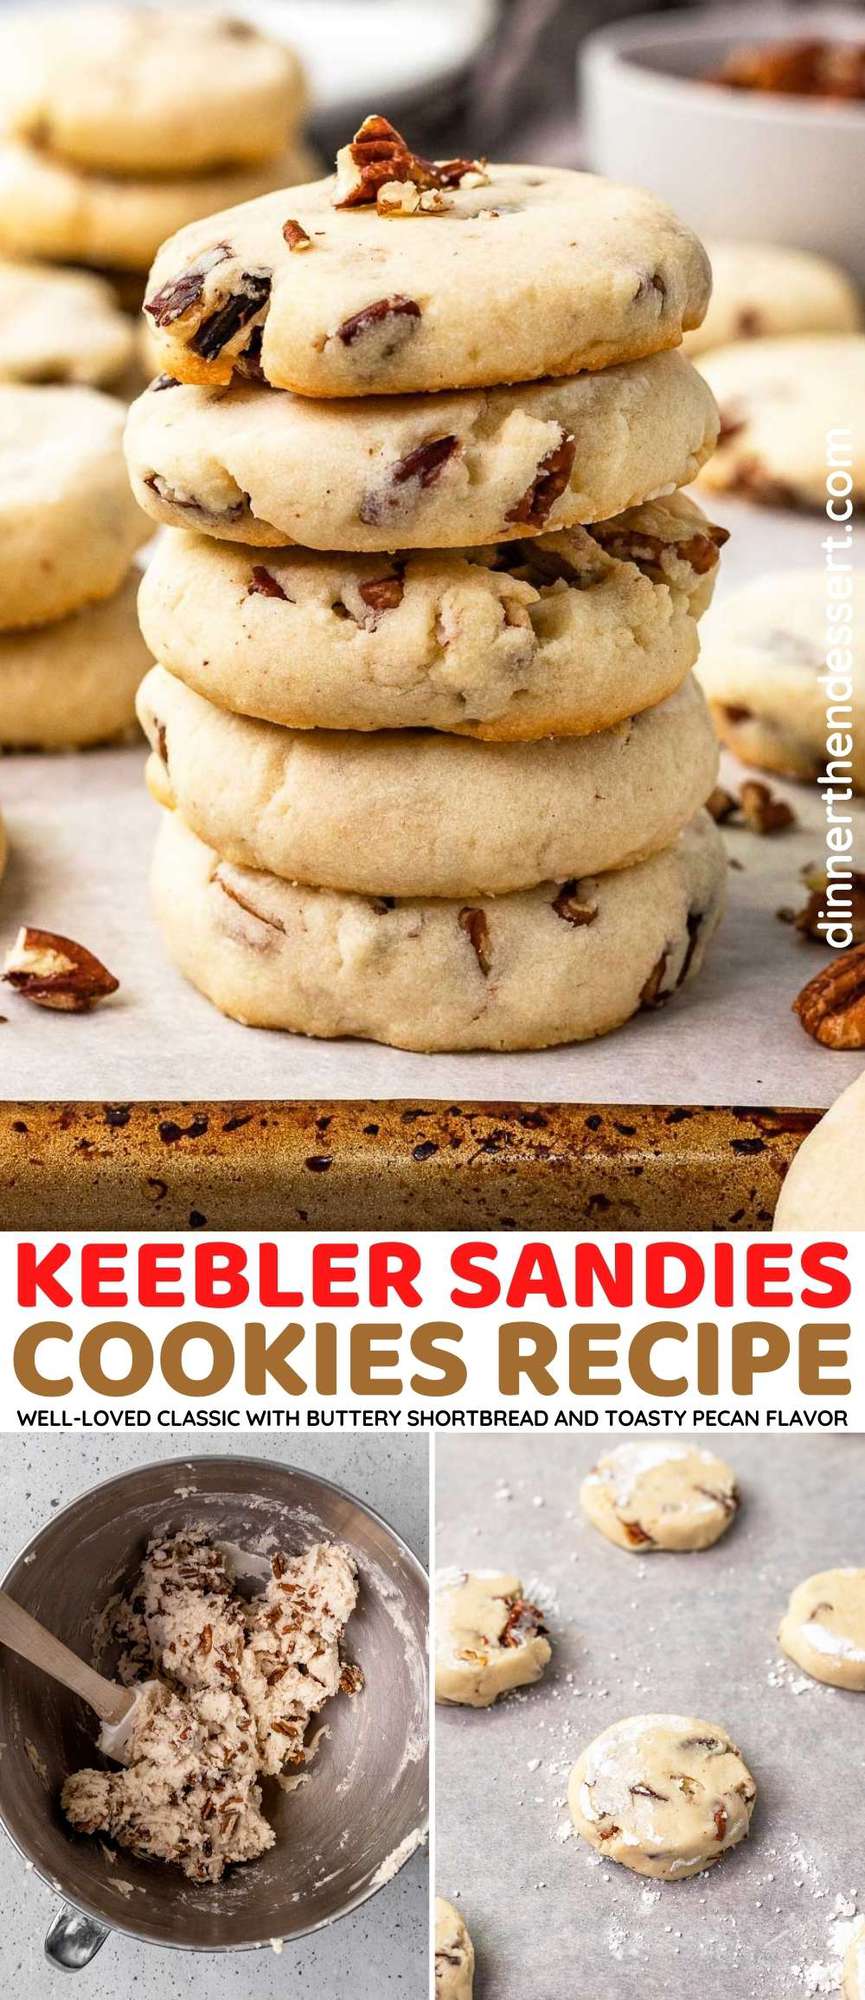 Keebler Sandies Cookies collage